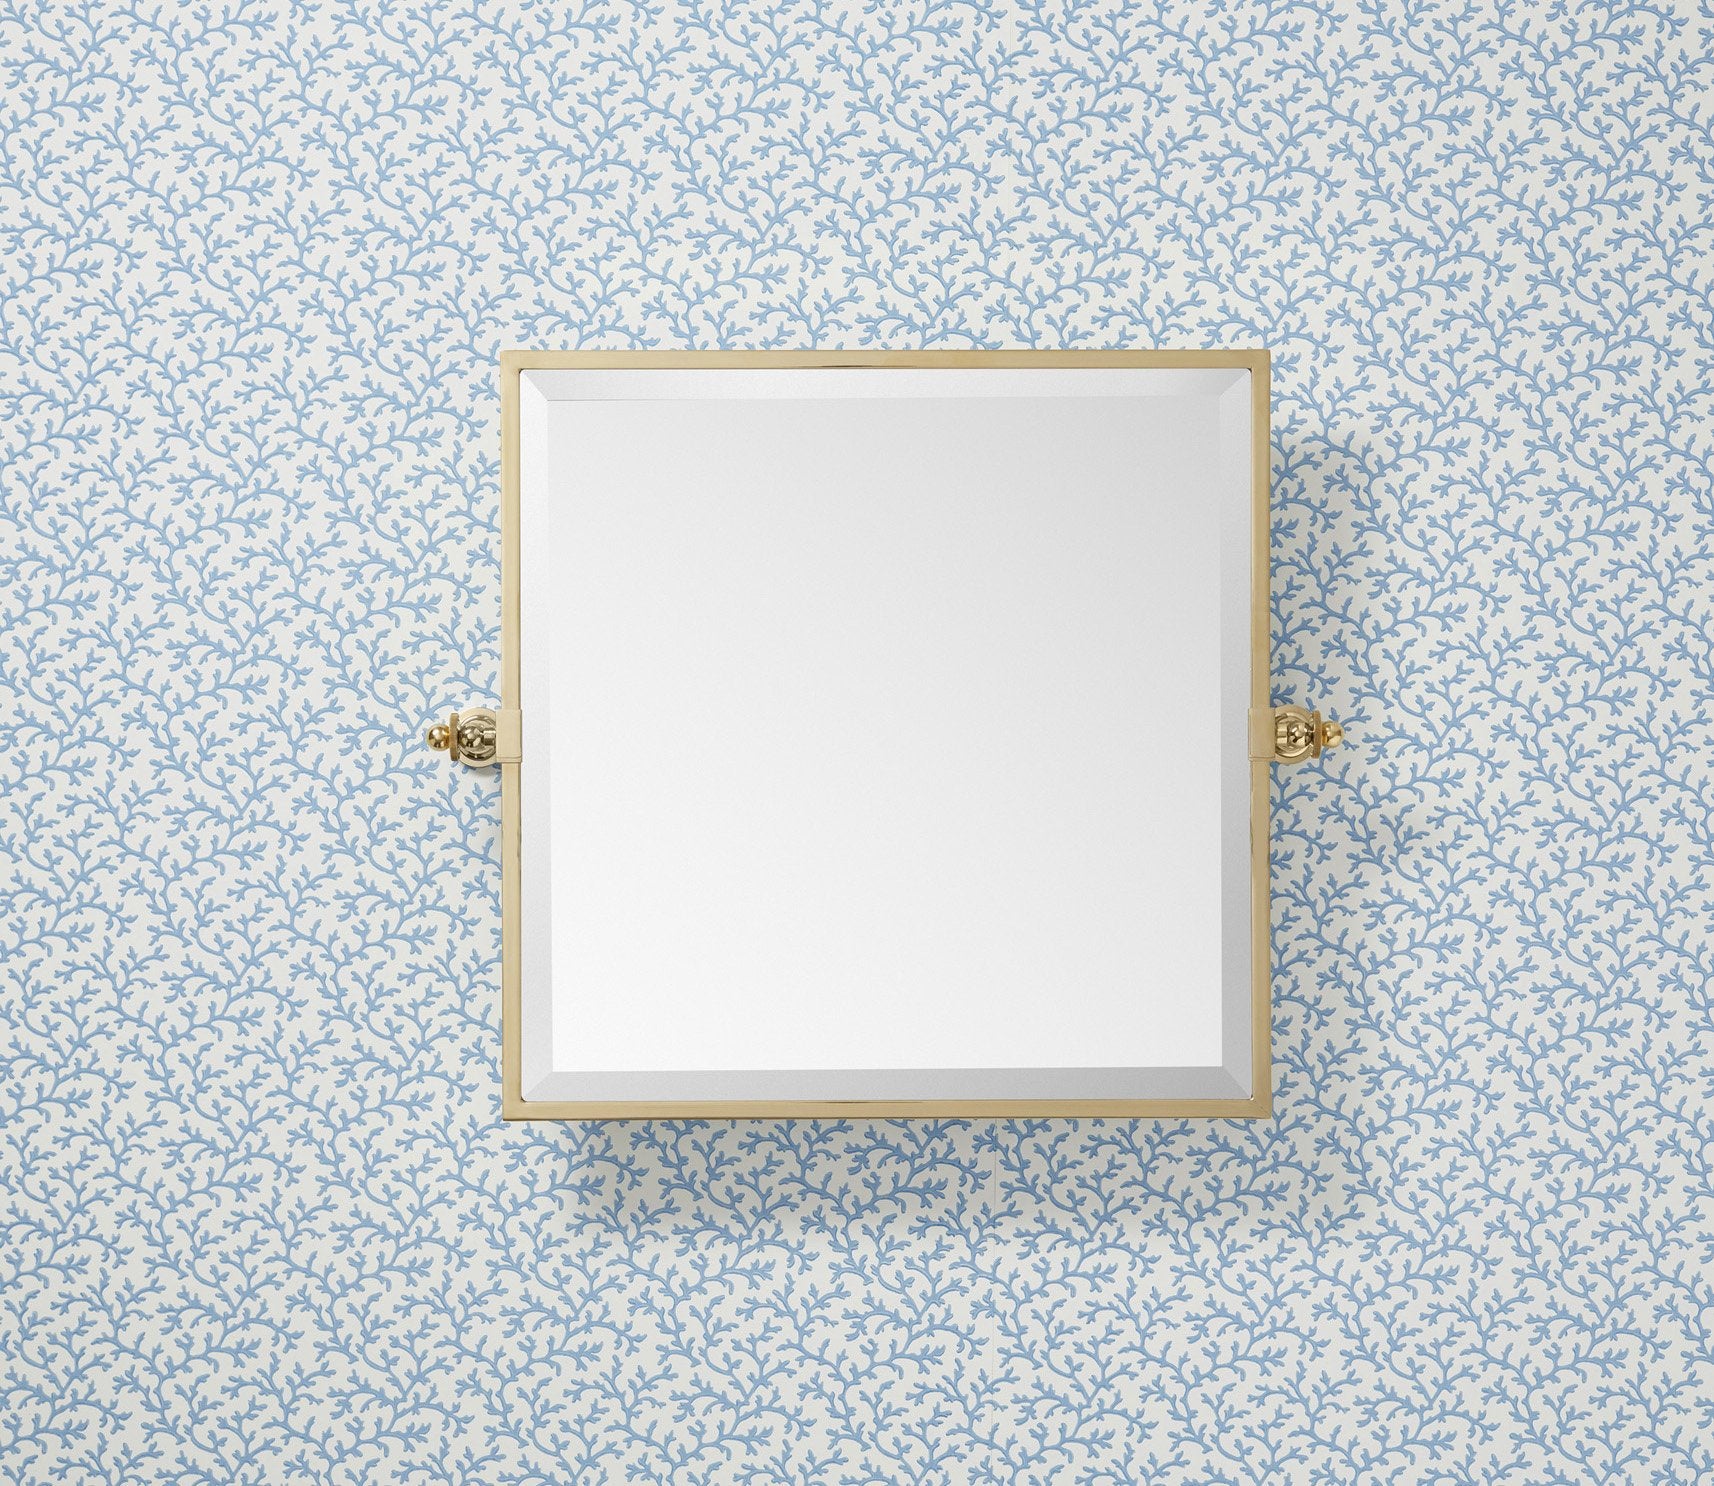 Hanbury Square Tilting Mirror Product Image 1